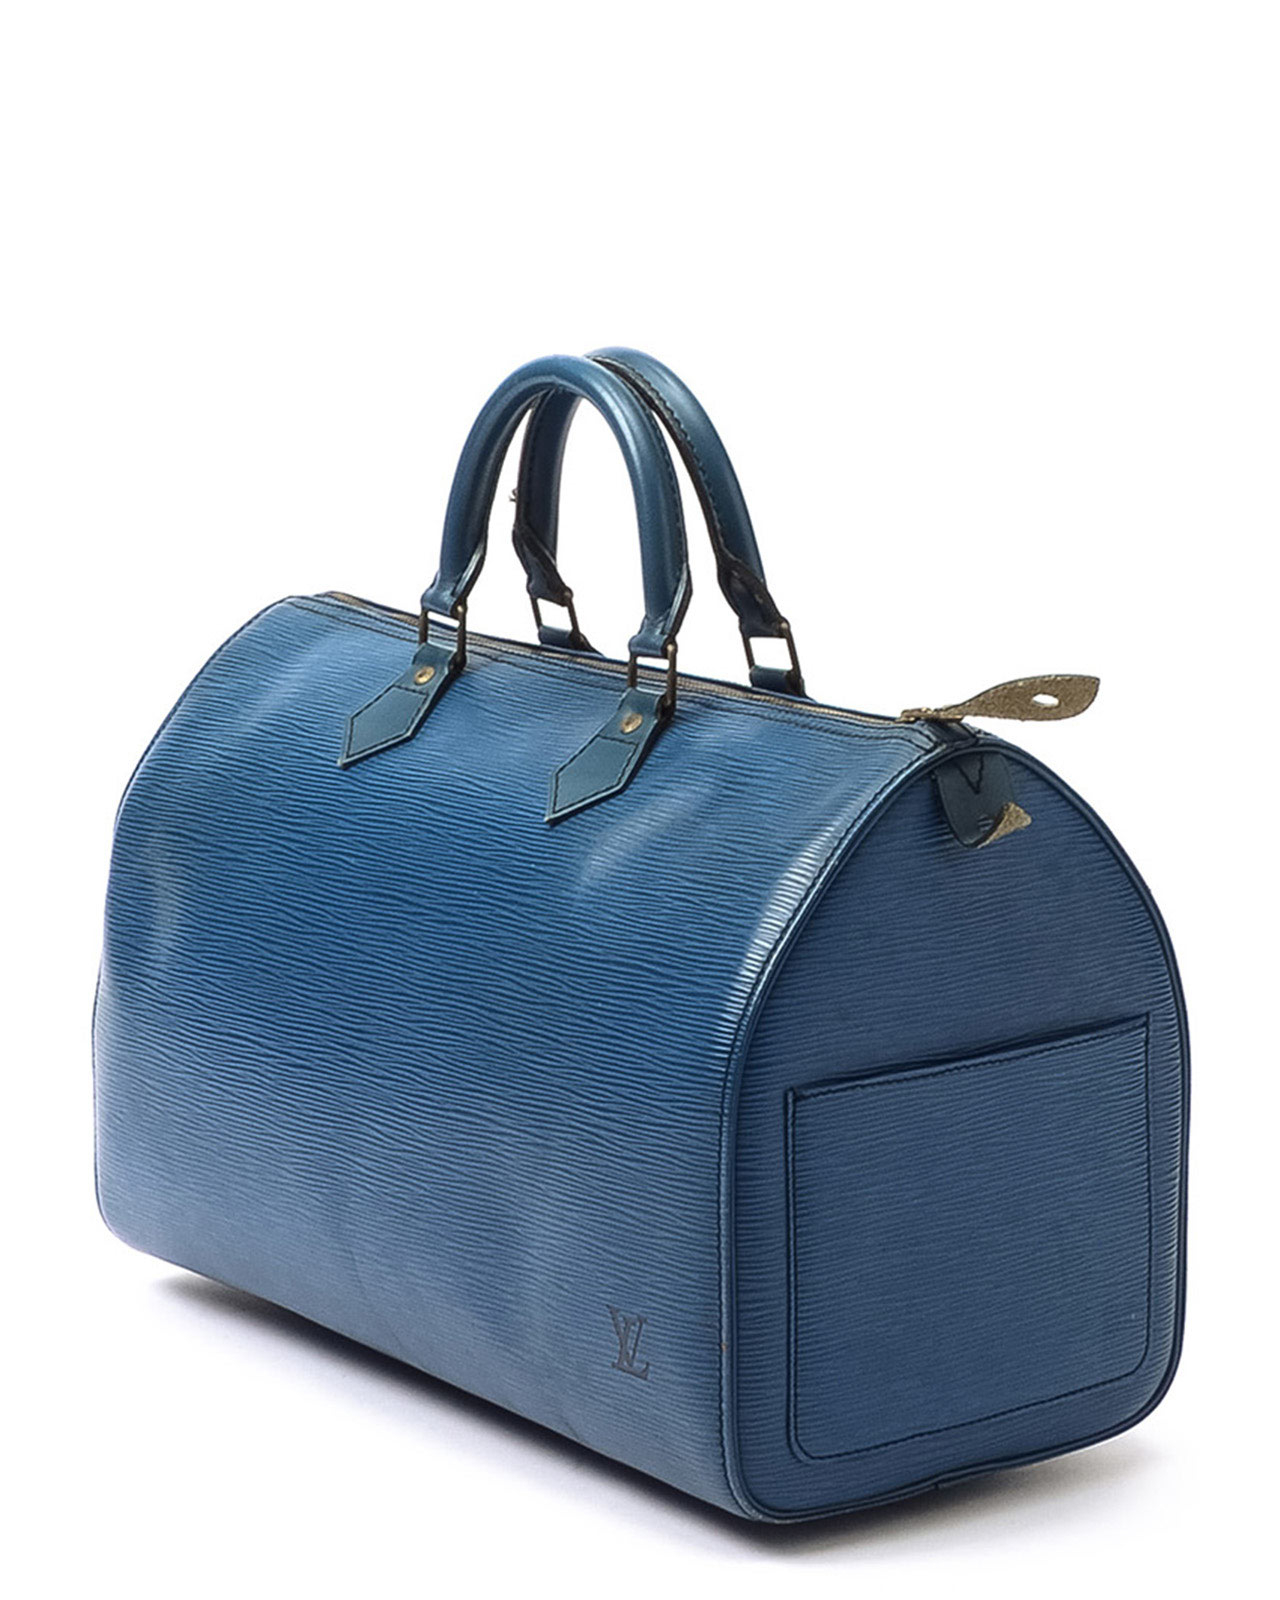 Lyst - Louis Vuitton Epi Speedy 30 Handbag in Blue